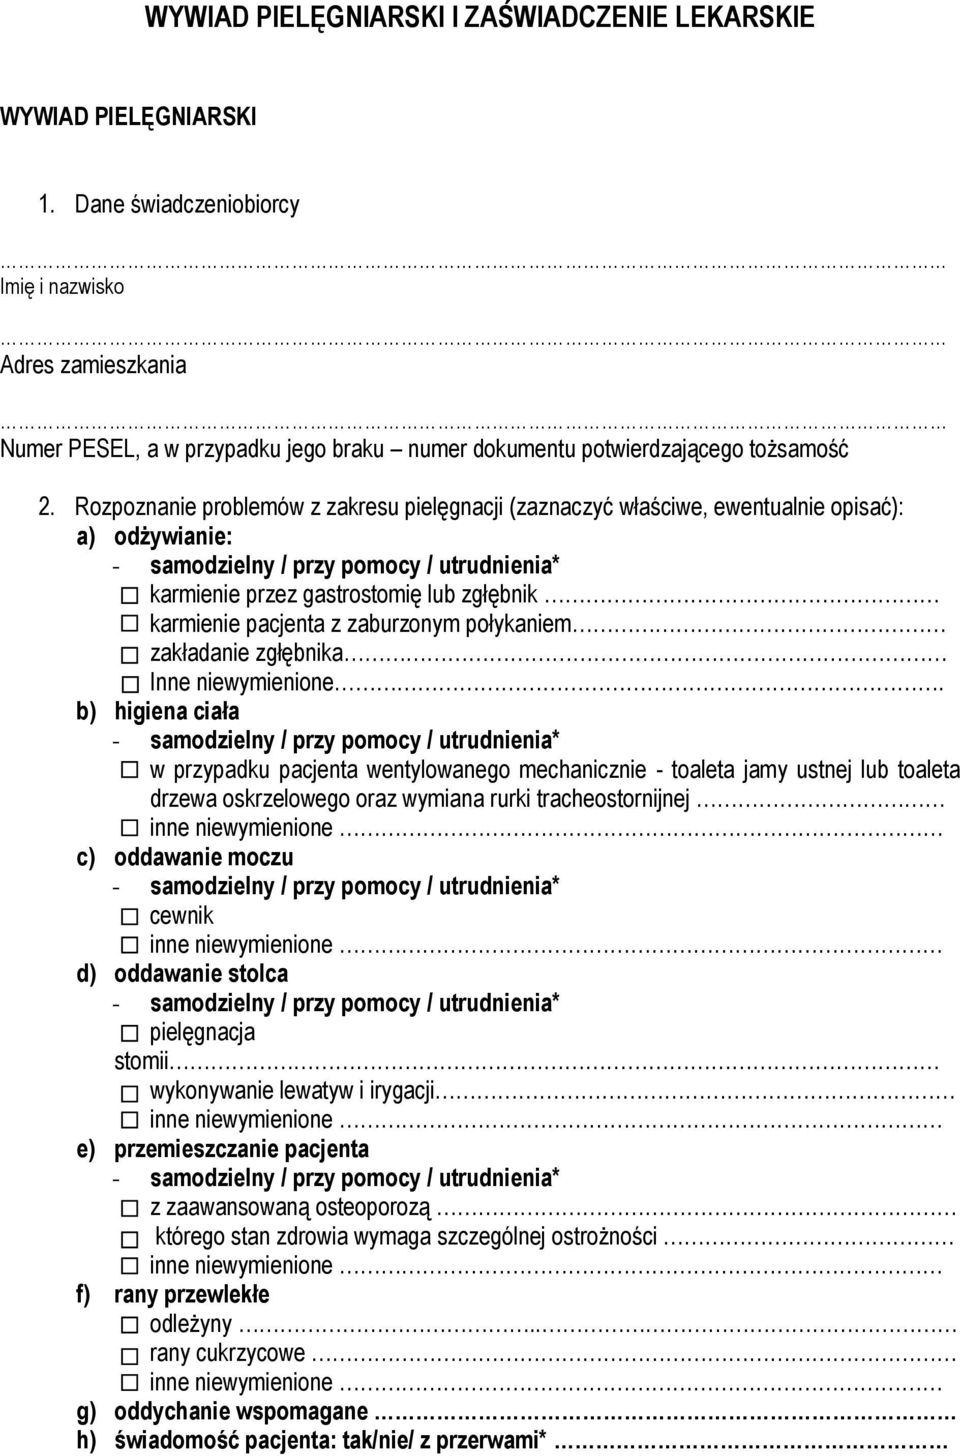 Rozpoznanie problemów z zakresu pielęgnacji (zaznaczyć właściwe, ewentualnie opisać): a) odżywianie: karmienie przez gastrostomię lub zgłębnik karmienie pacjenta z zaburzonym połykaniem zakładanie